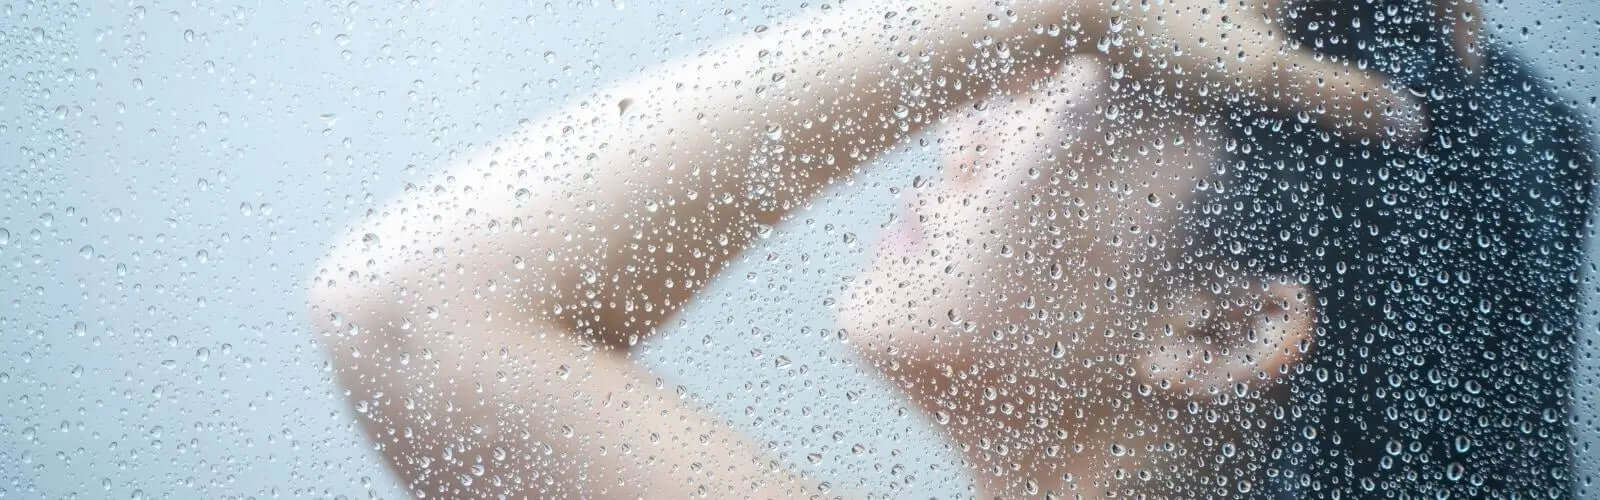 Descubre 5 razones genuinas para considerar el uso de filtros en los cabezales de ducha.